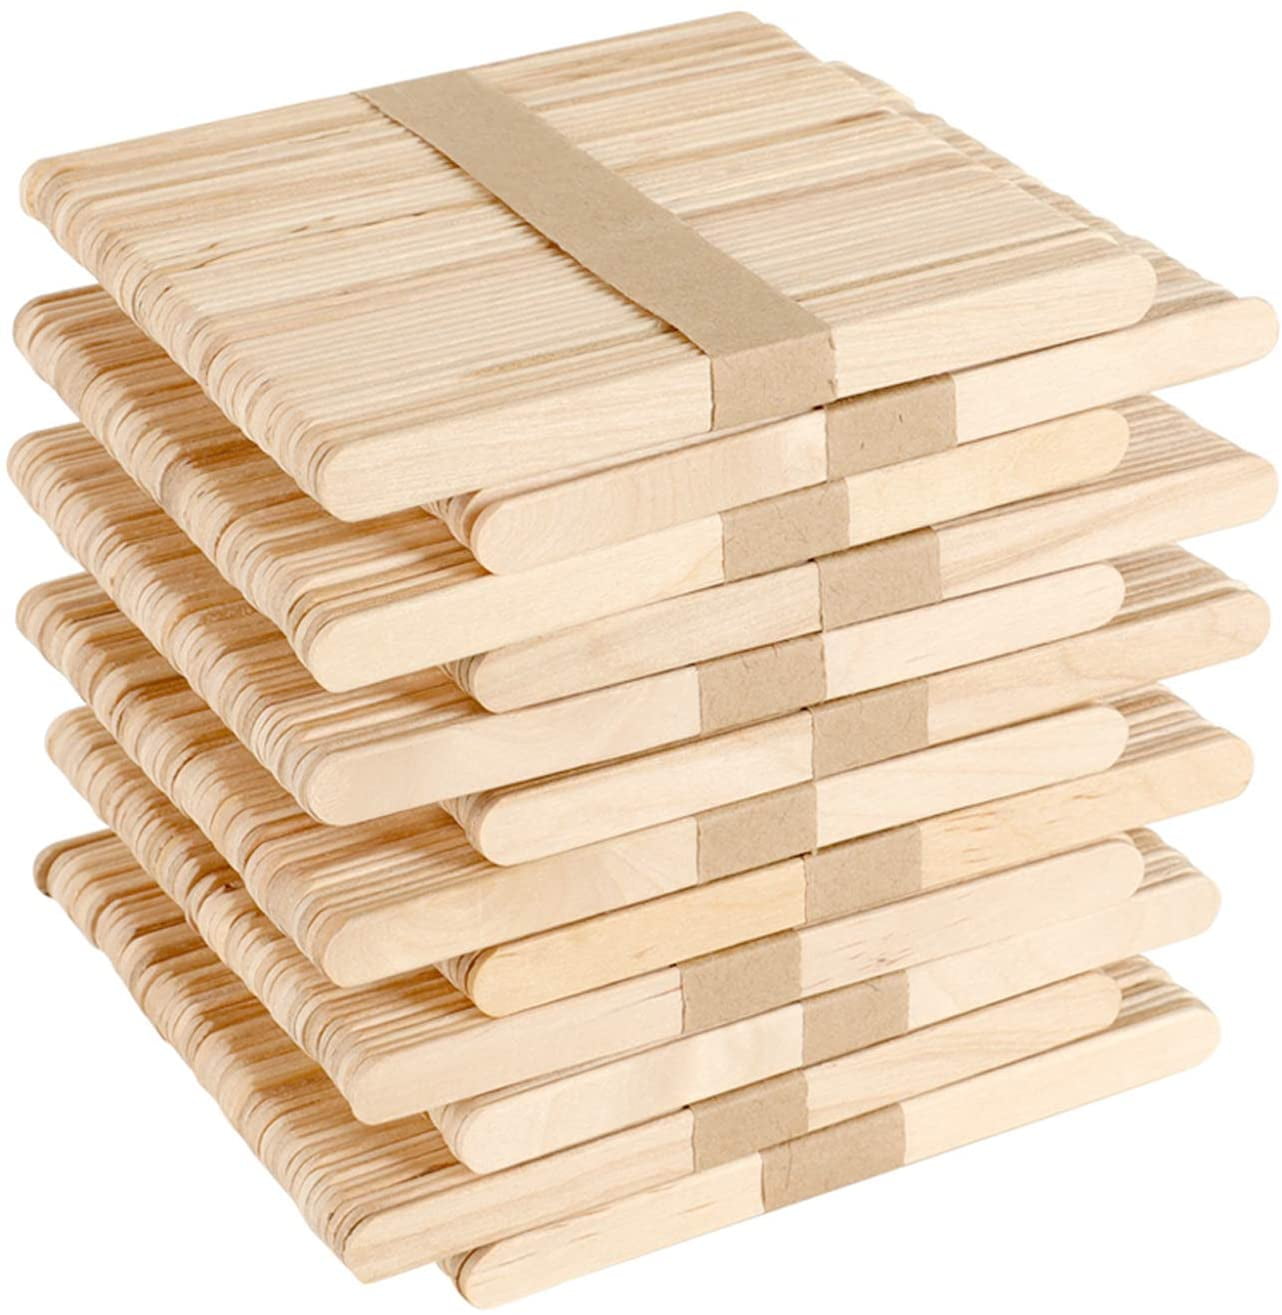 600 Stück Eisstiele aus Holz, Holzspatel Basteln, Holzstäbchen zum